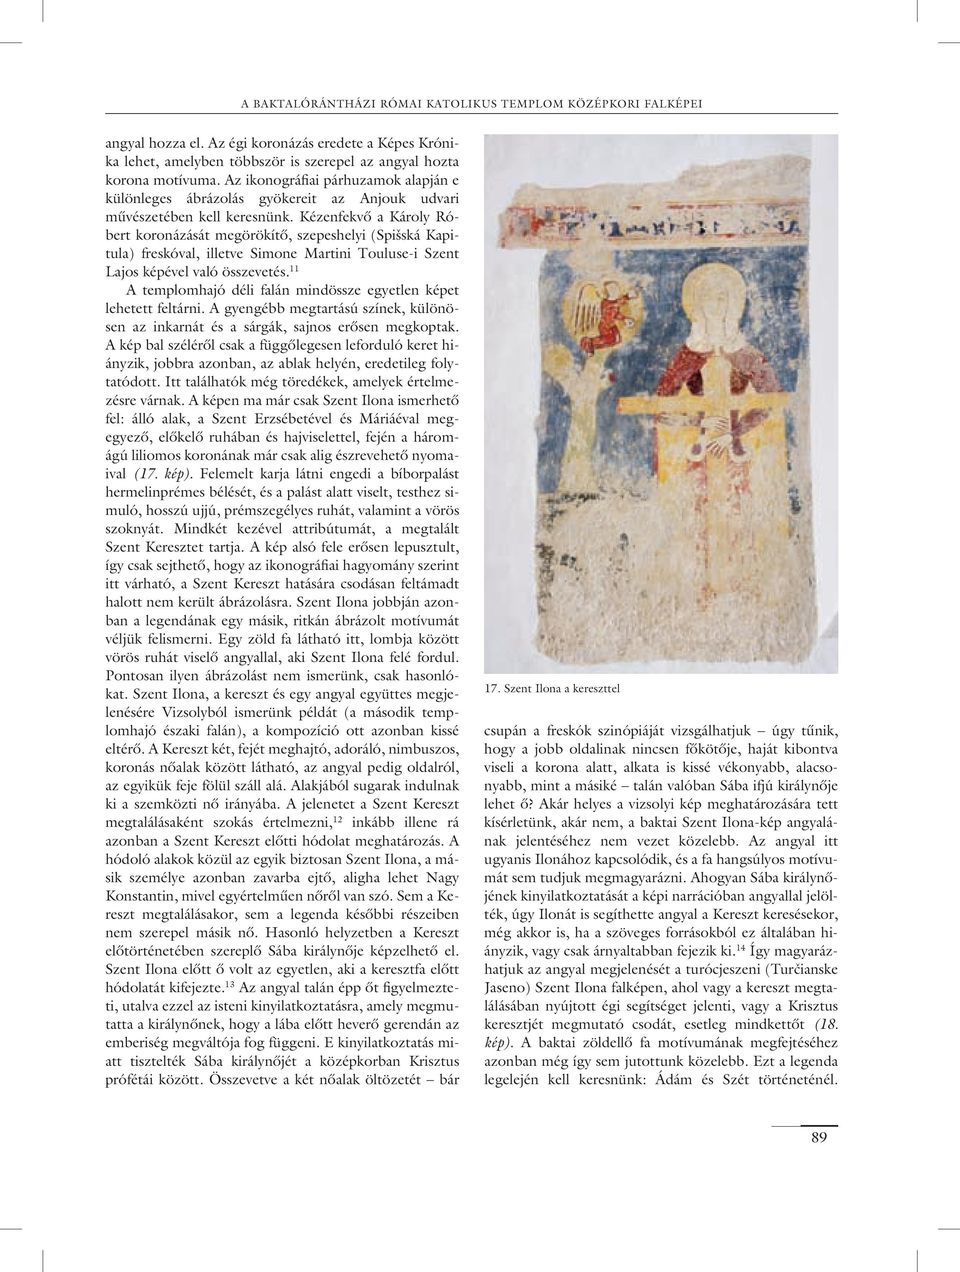 Kézenfekvô a Károly Róbert koronázását megörökítô, szepeshelyi (Spišská Kapitula) freskóval, illetve Simone Martini Touluse-i Szent Lajos képével való összevetés.